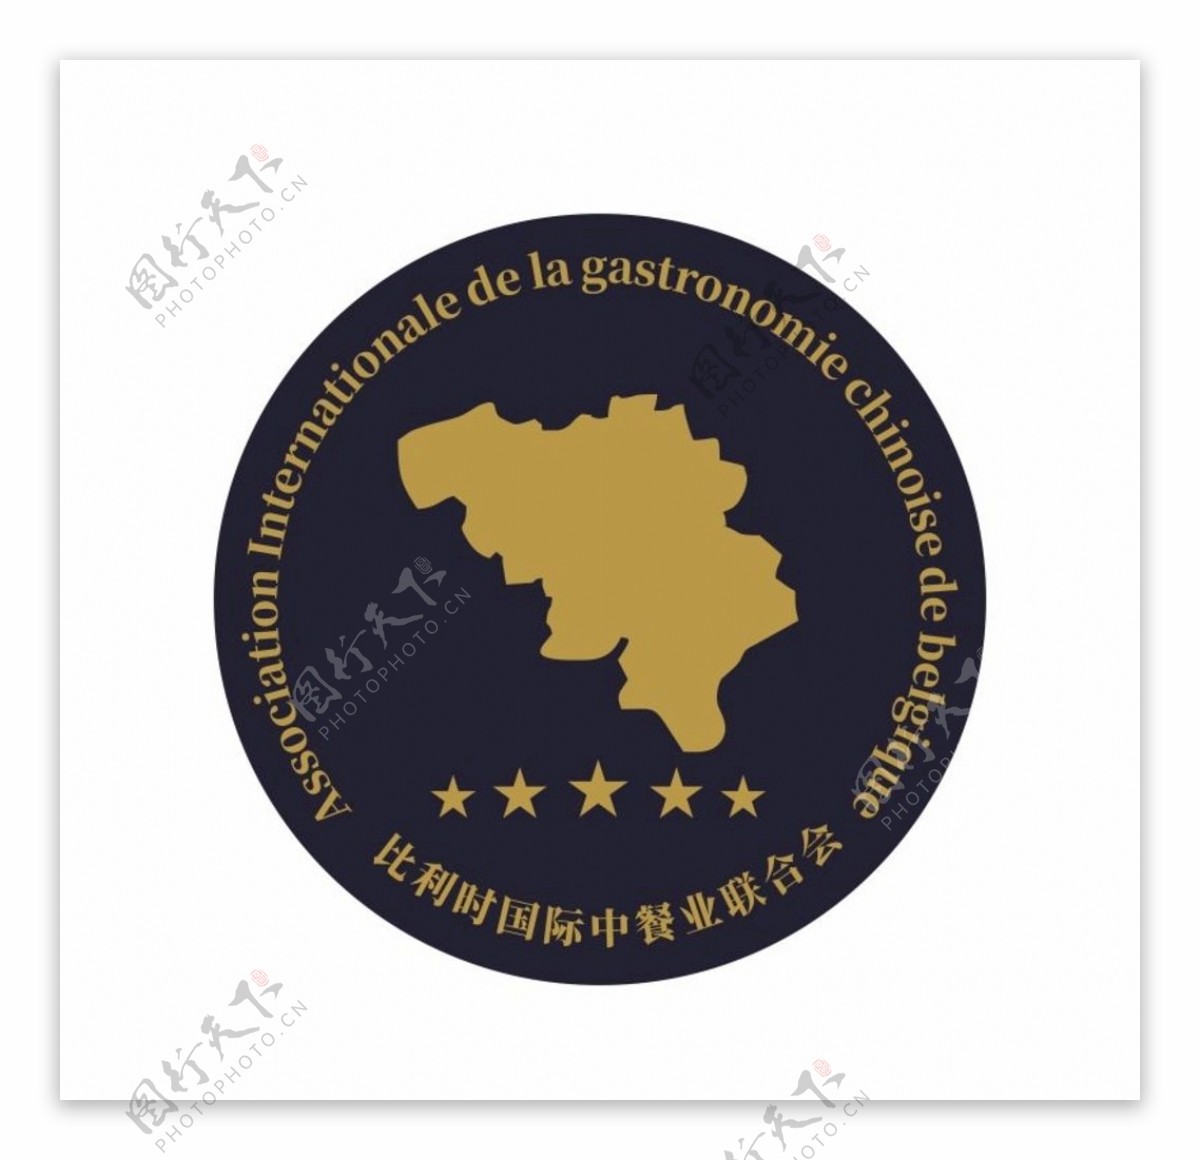 比利时国际中餐业联合会logo图片